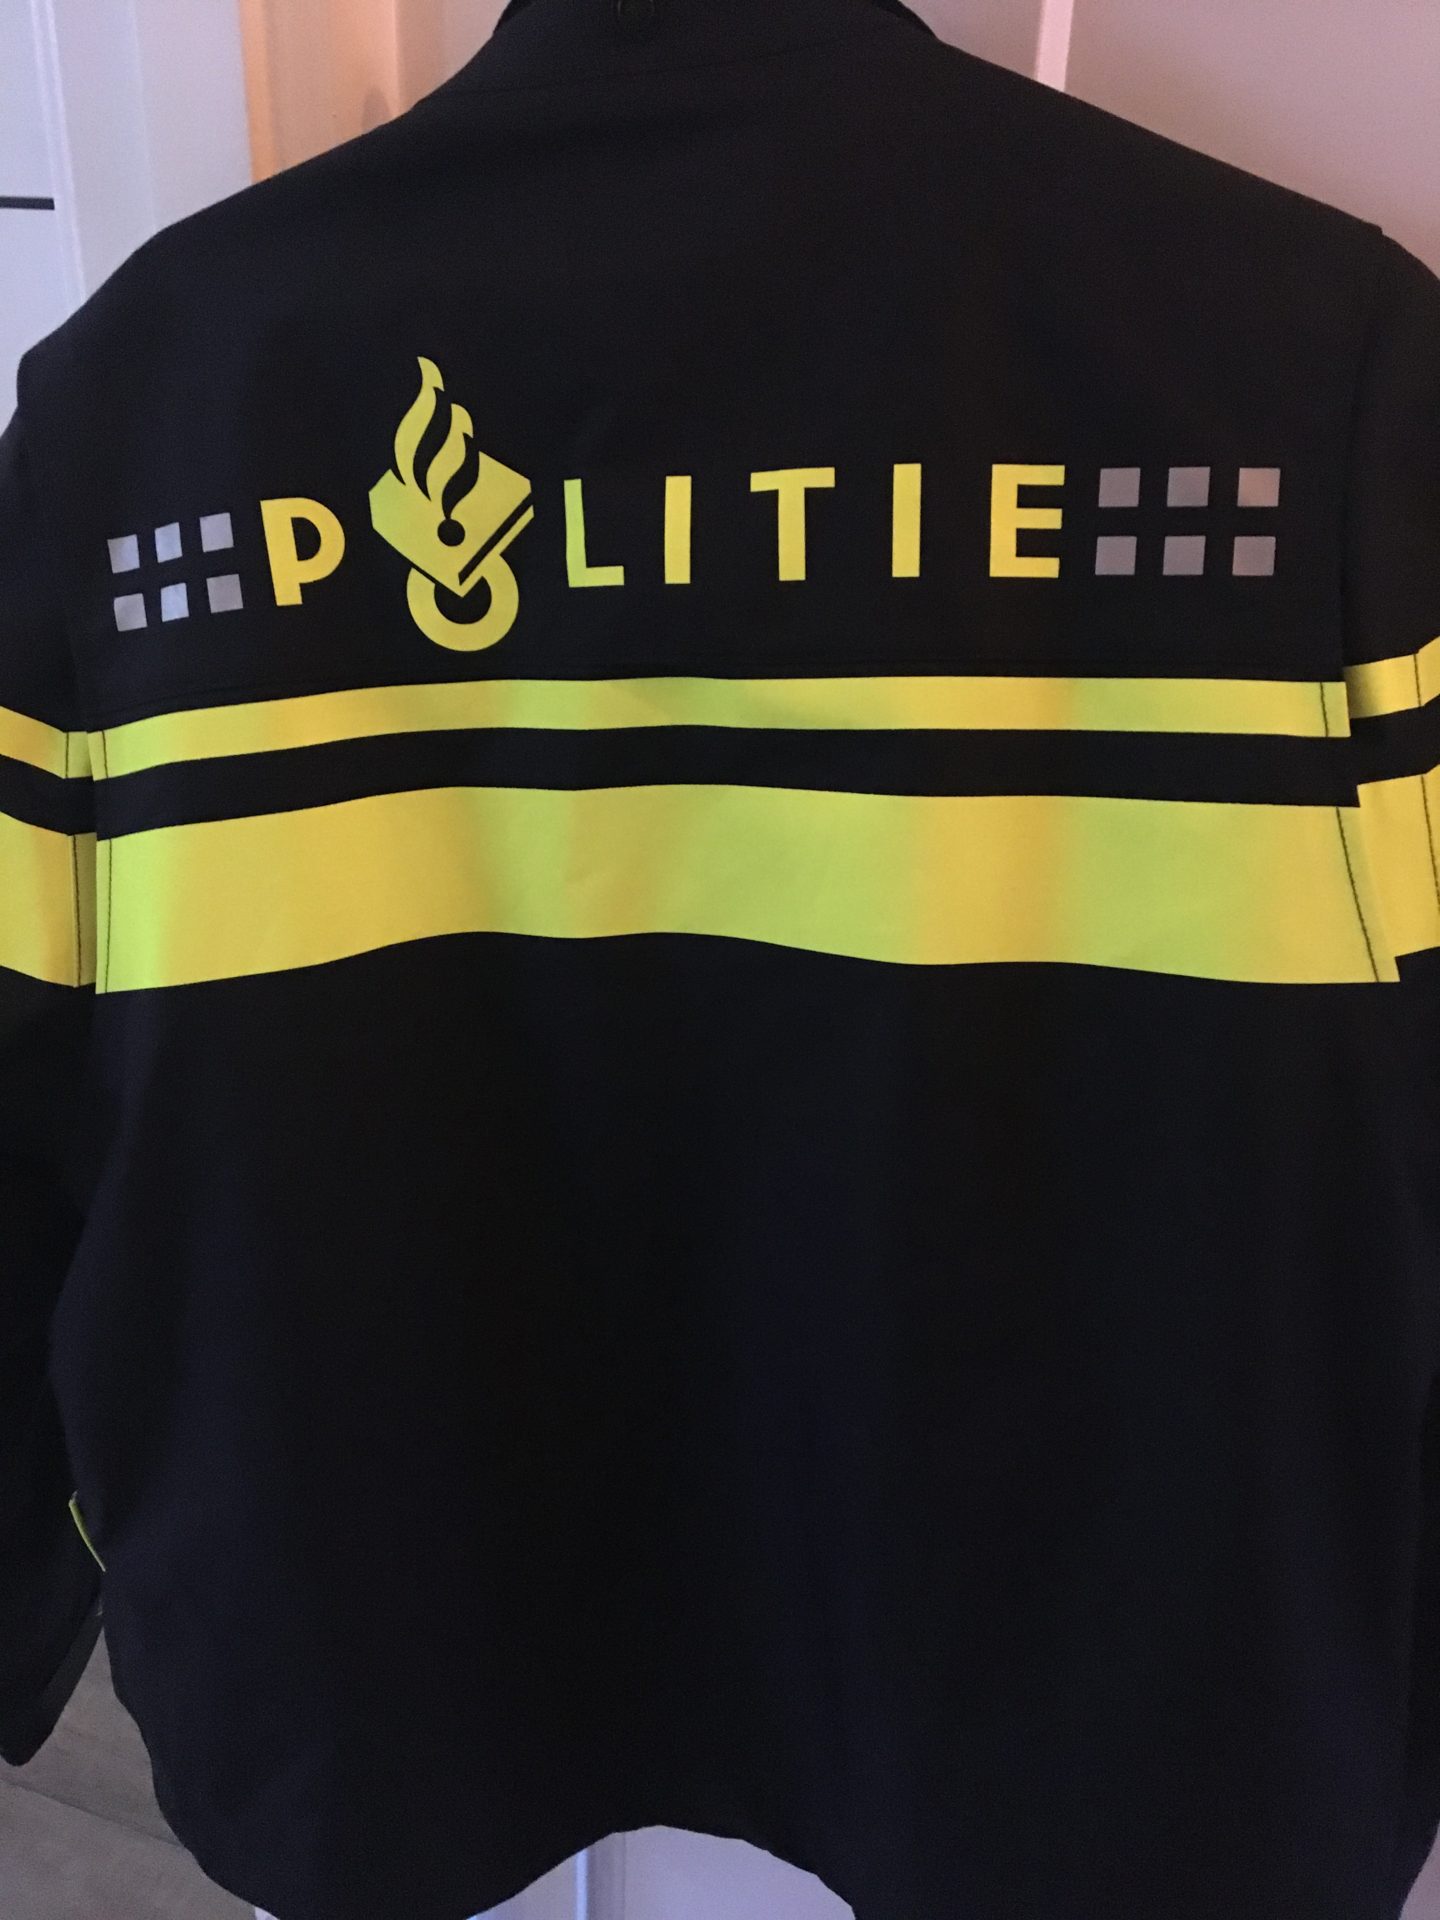 Toevlucht Kelder krans Recycling Politie-uniformen - Creatief Perspectief